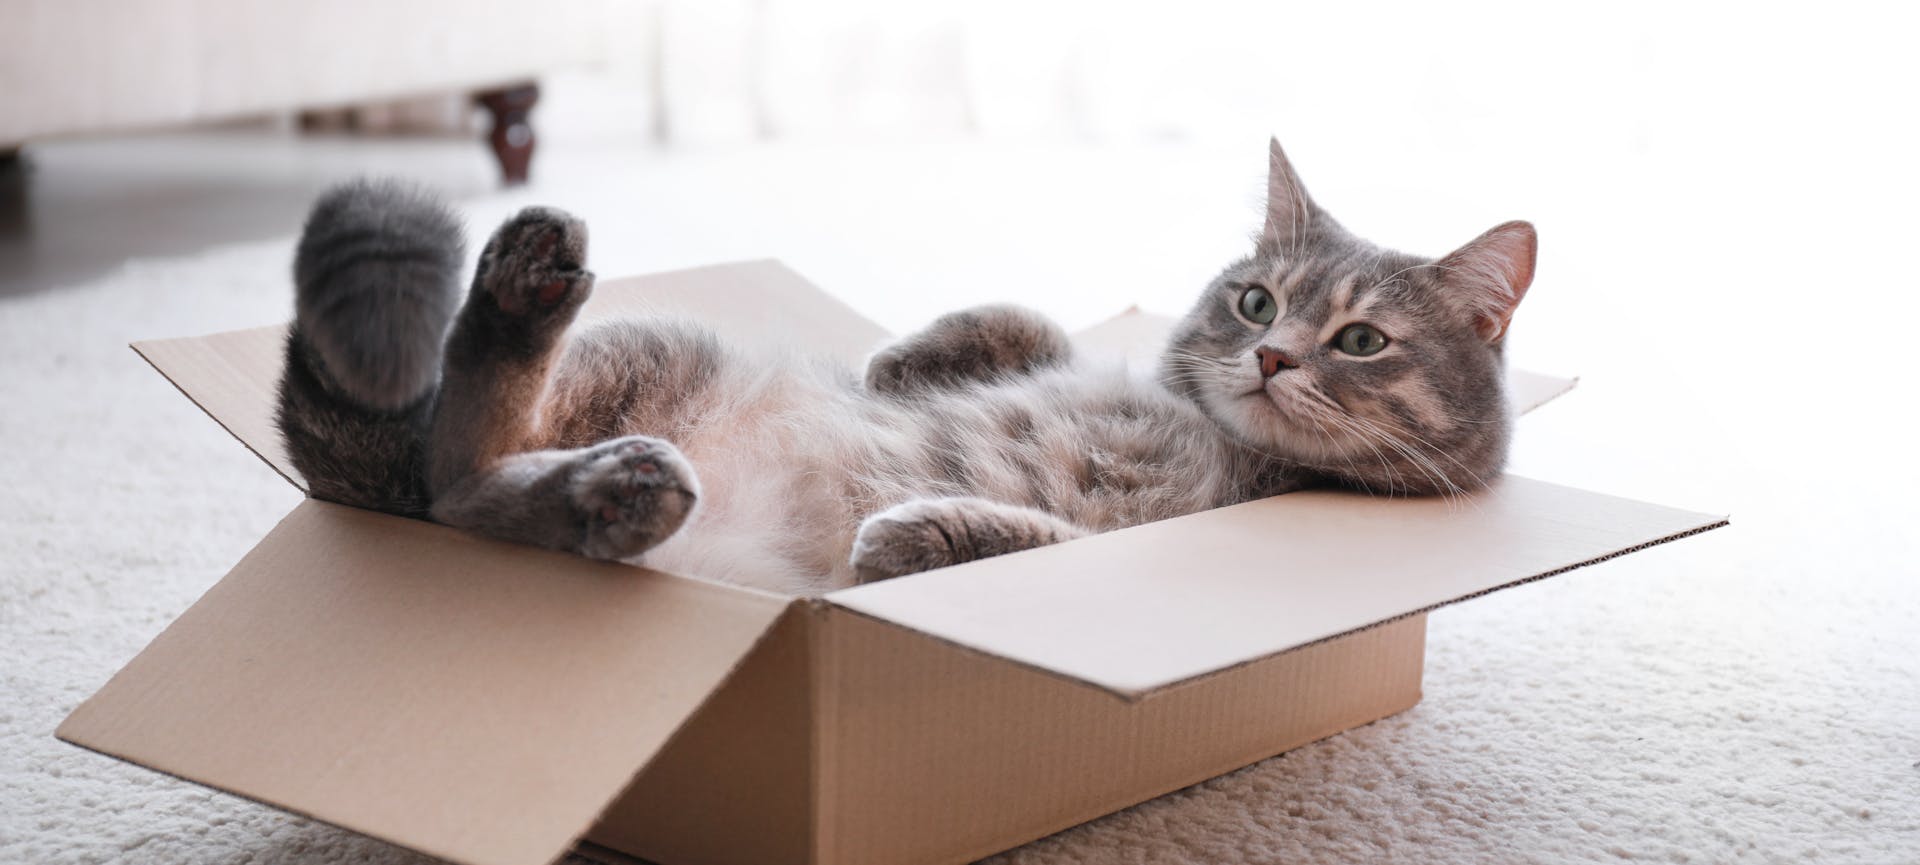 Demenagement chat : un chat qui se cache dans les cartons